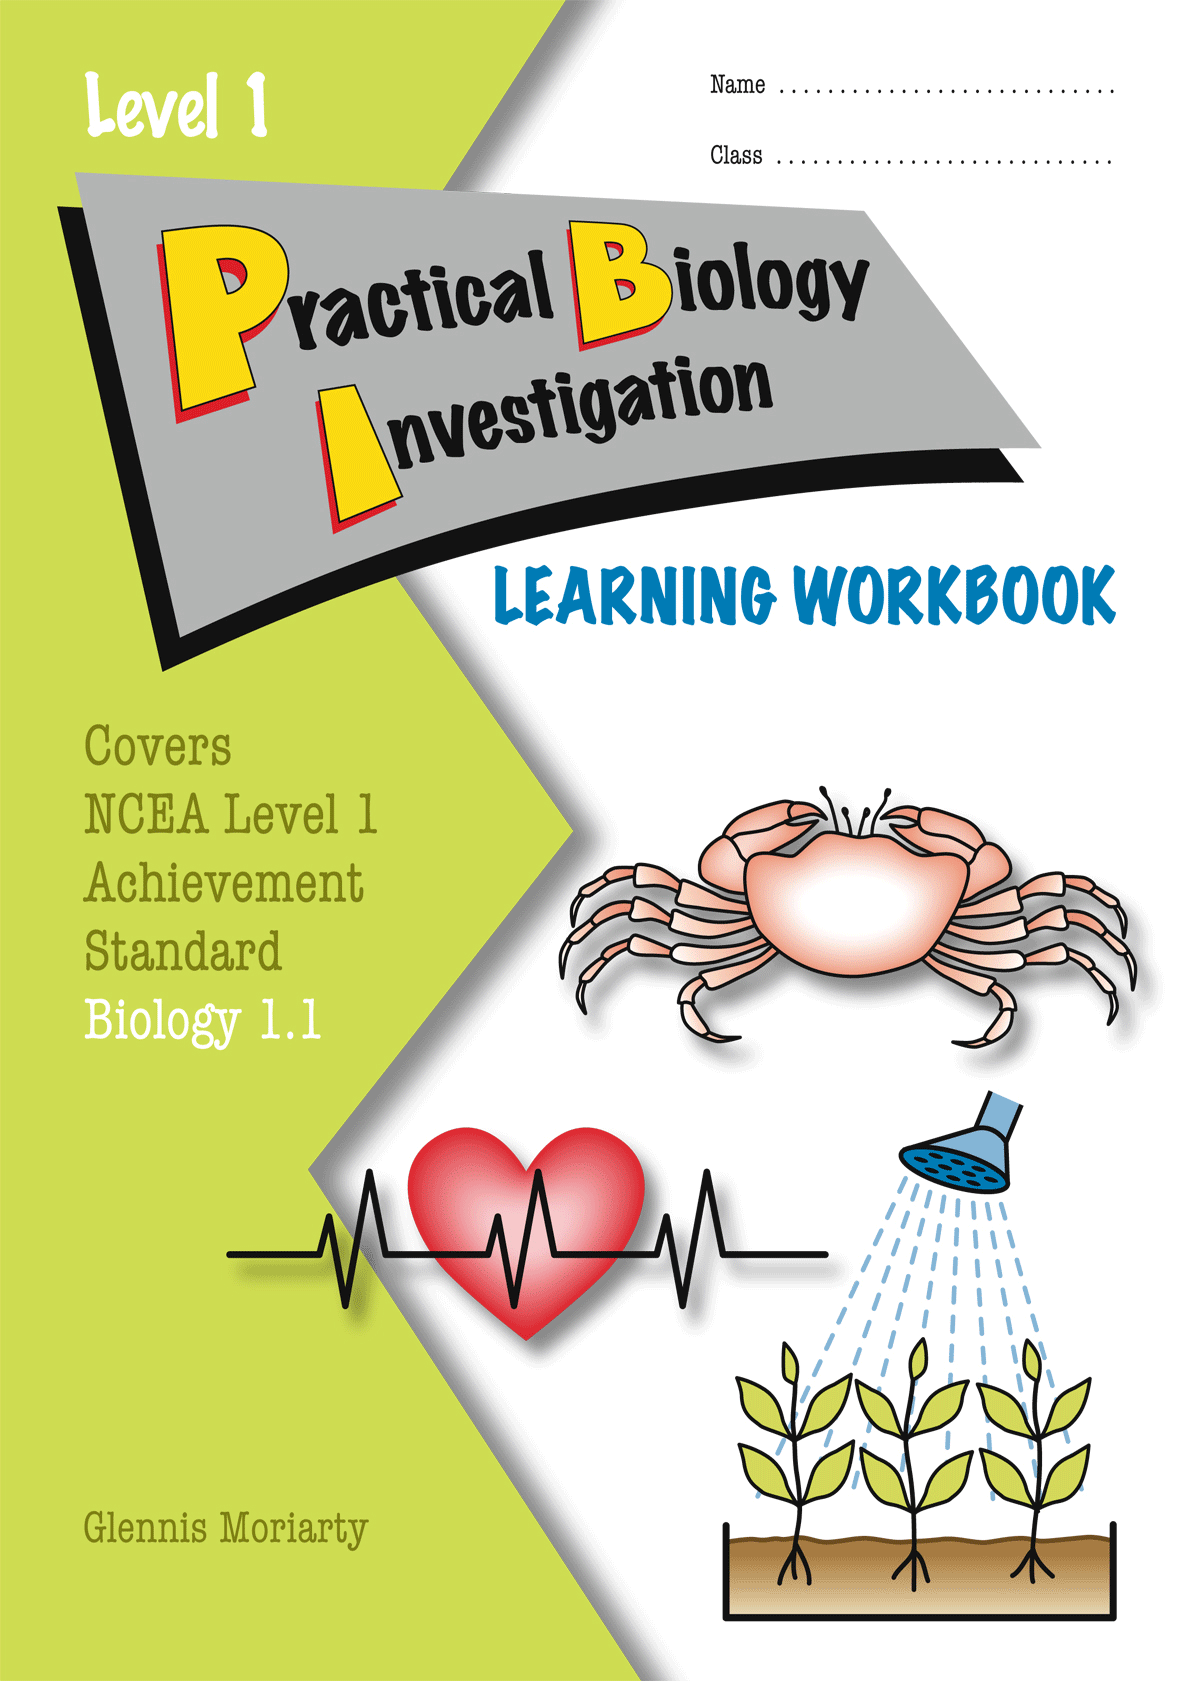 Level 1 Practical Biology Investigation 1.1 Learning Workbook